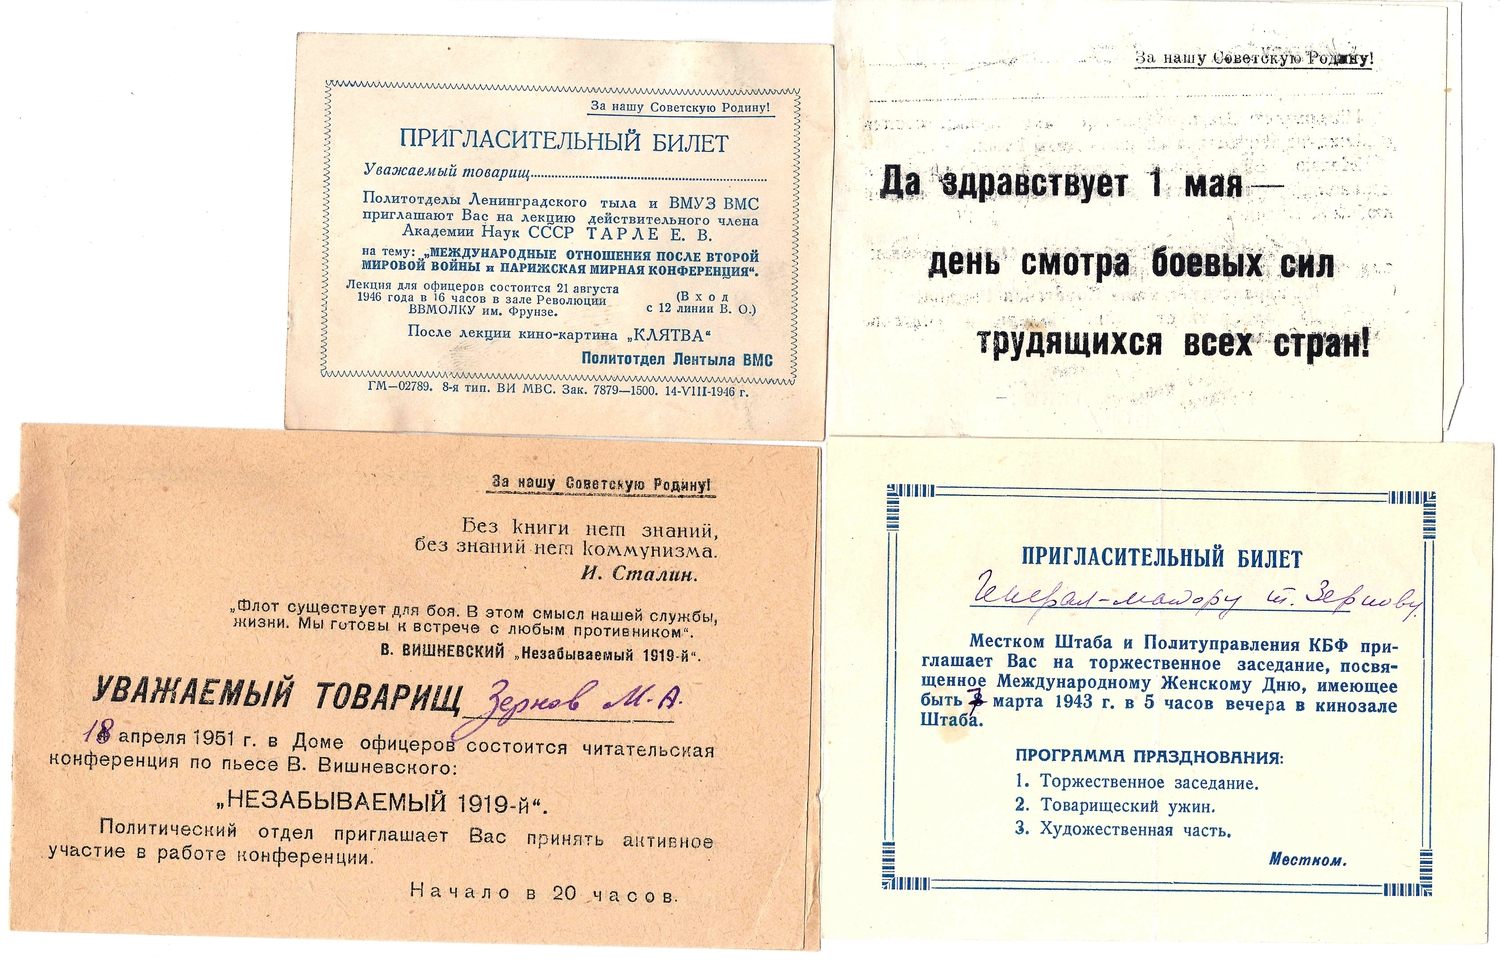 3 пригласительных билета и поздравление. 1940-е - начало 1950-х годов. Из архива М.А. Зернова.